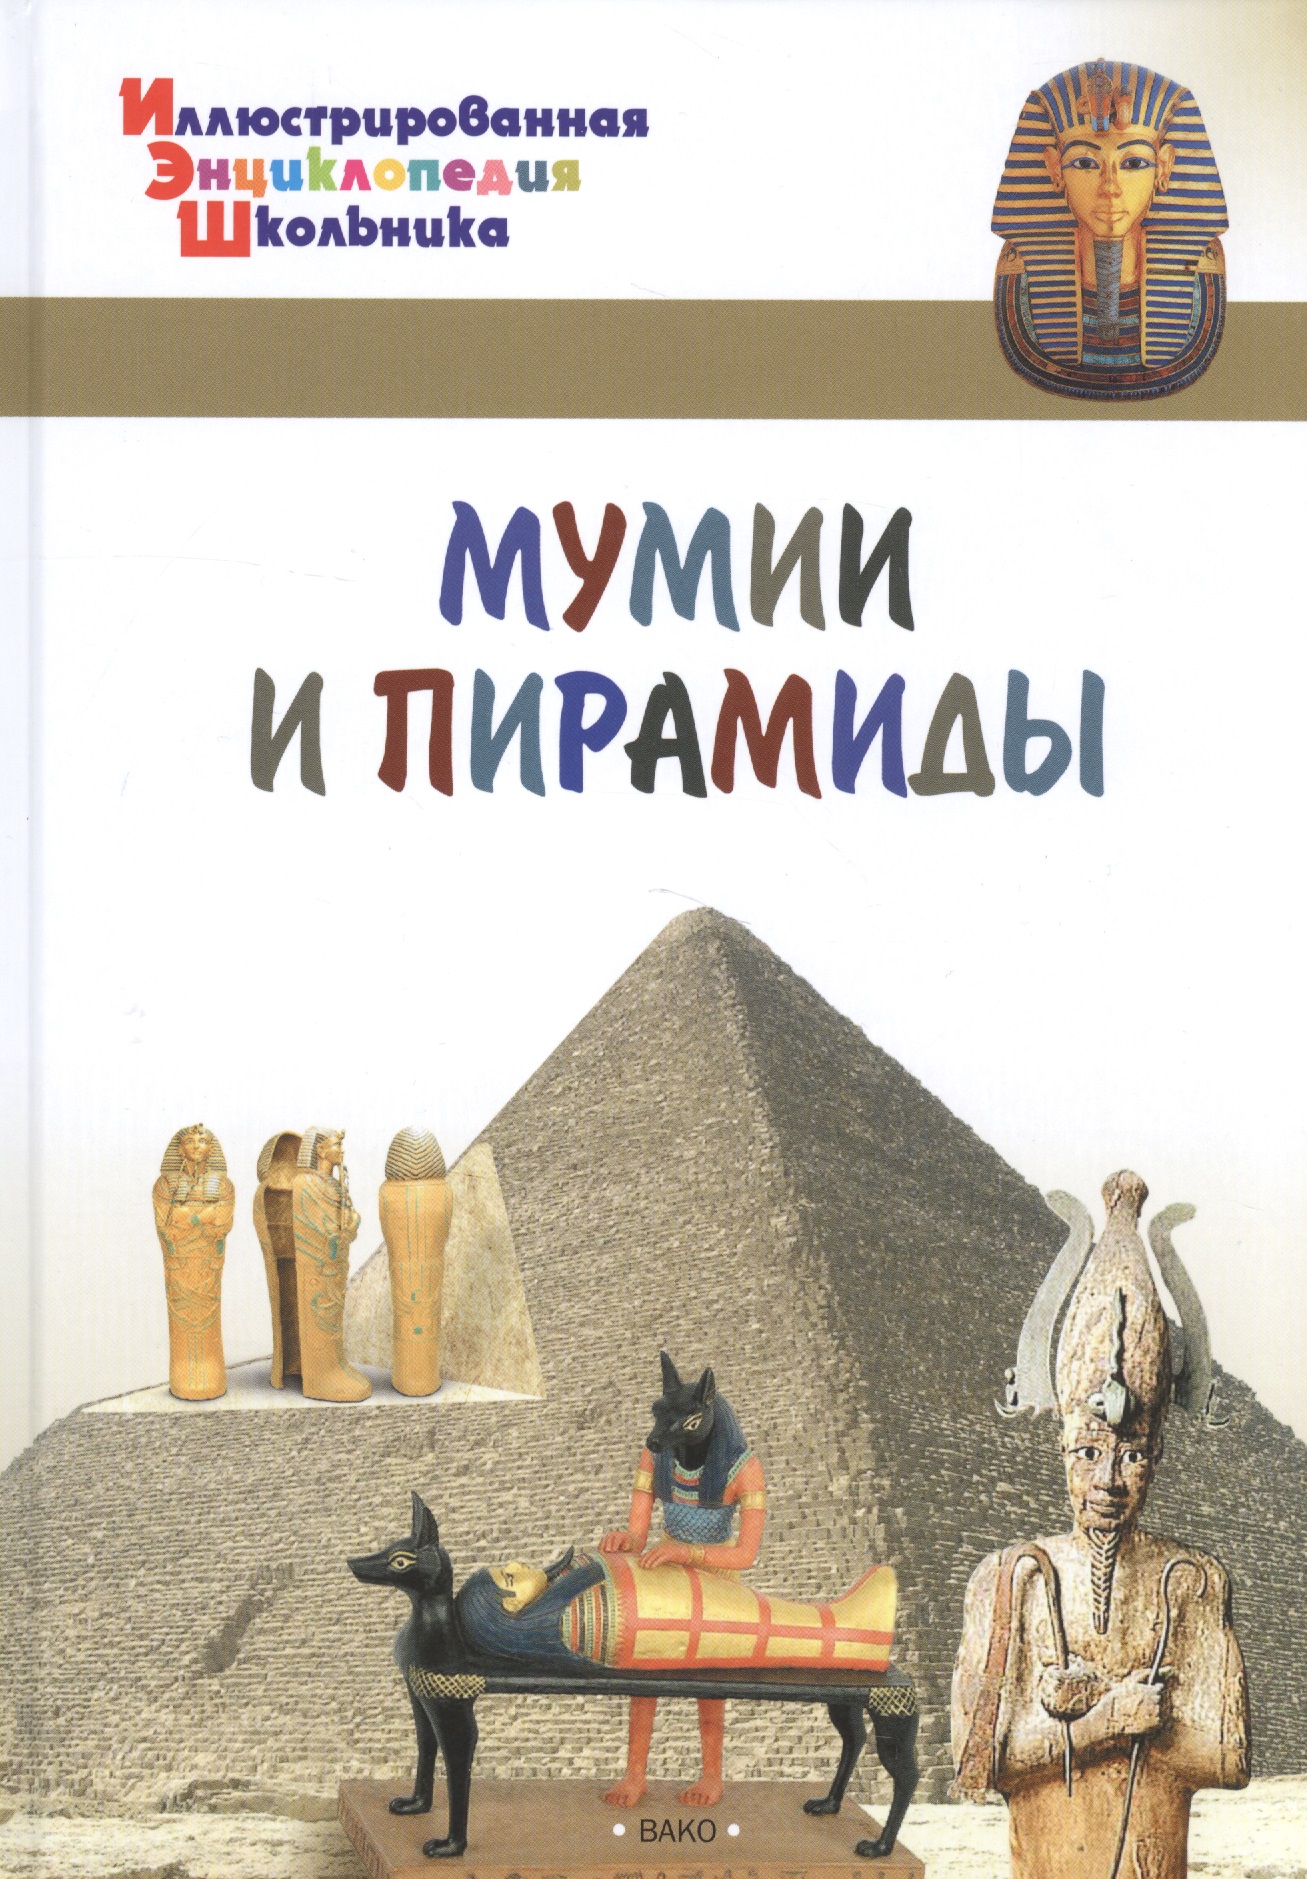 Орехов А.А. - Мумии и пирамиды